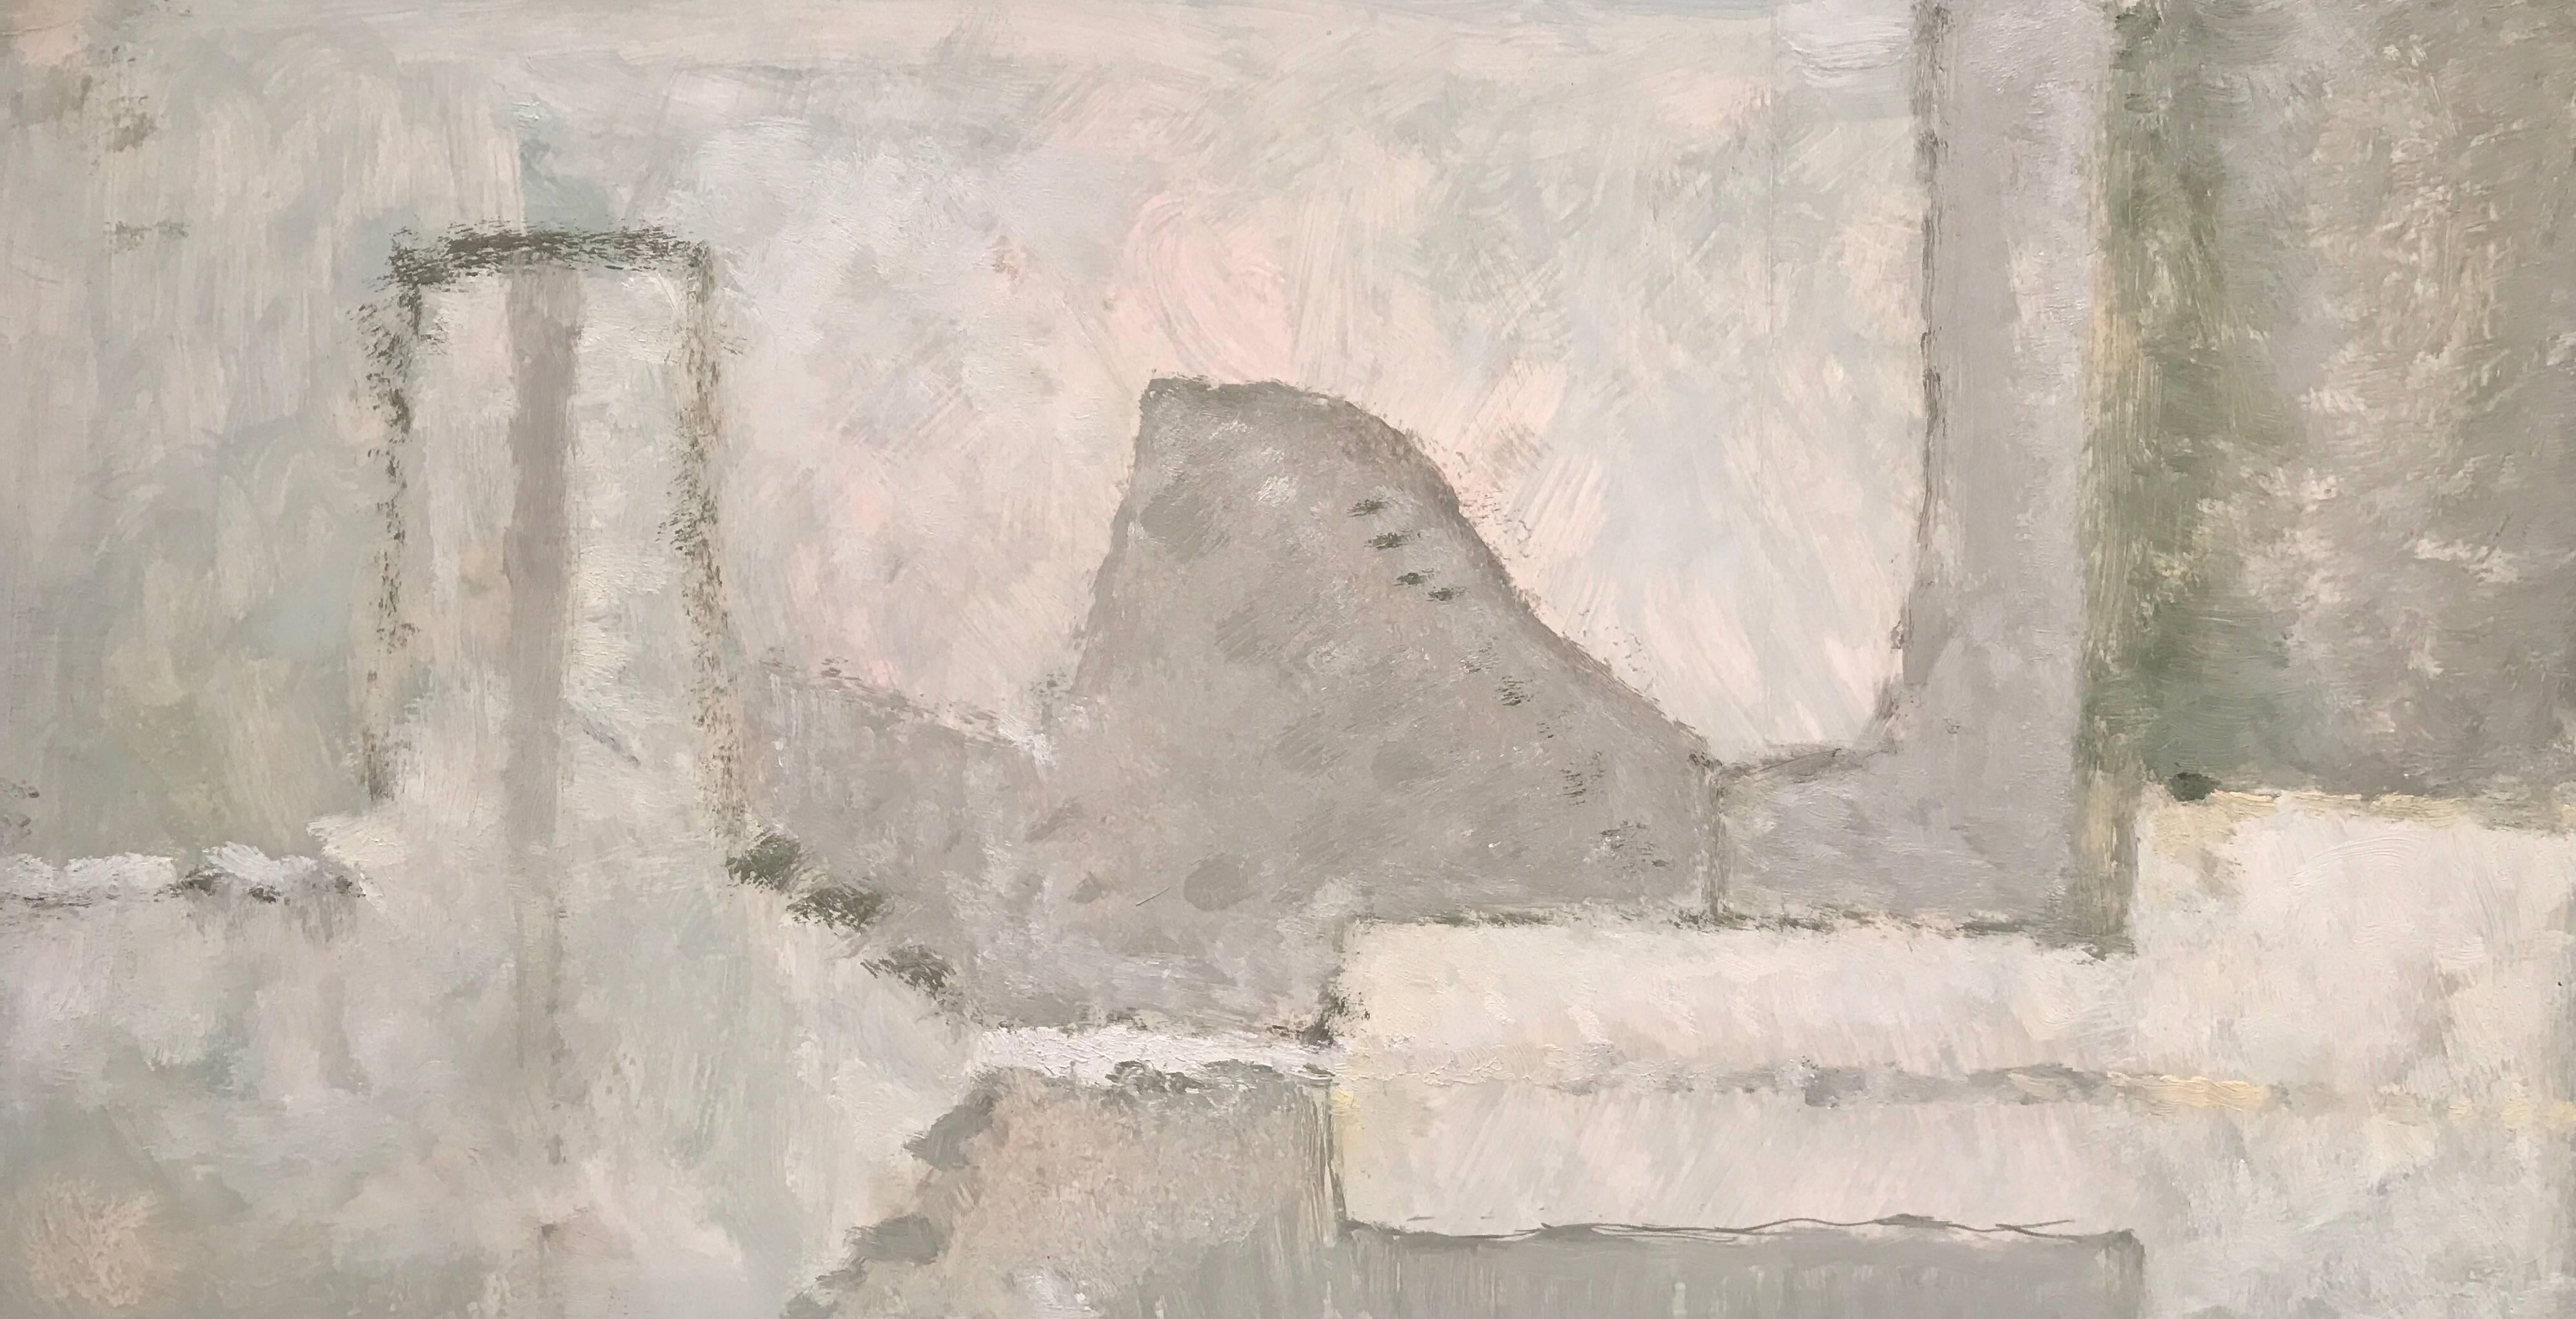 Yvette Dubois Habasque Abstract Painting – Zeitgenössisches französisches Ölgemälde des Abstrakten Expressionismus